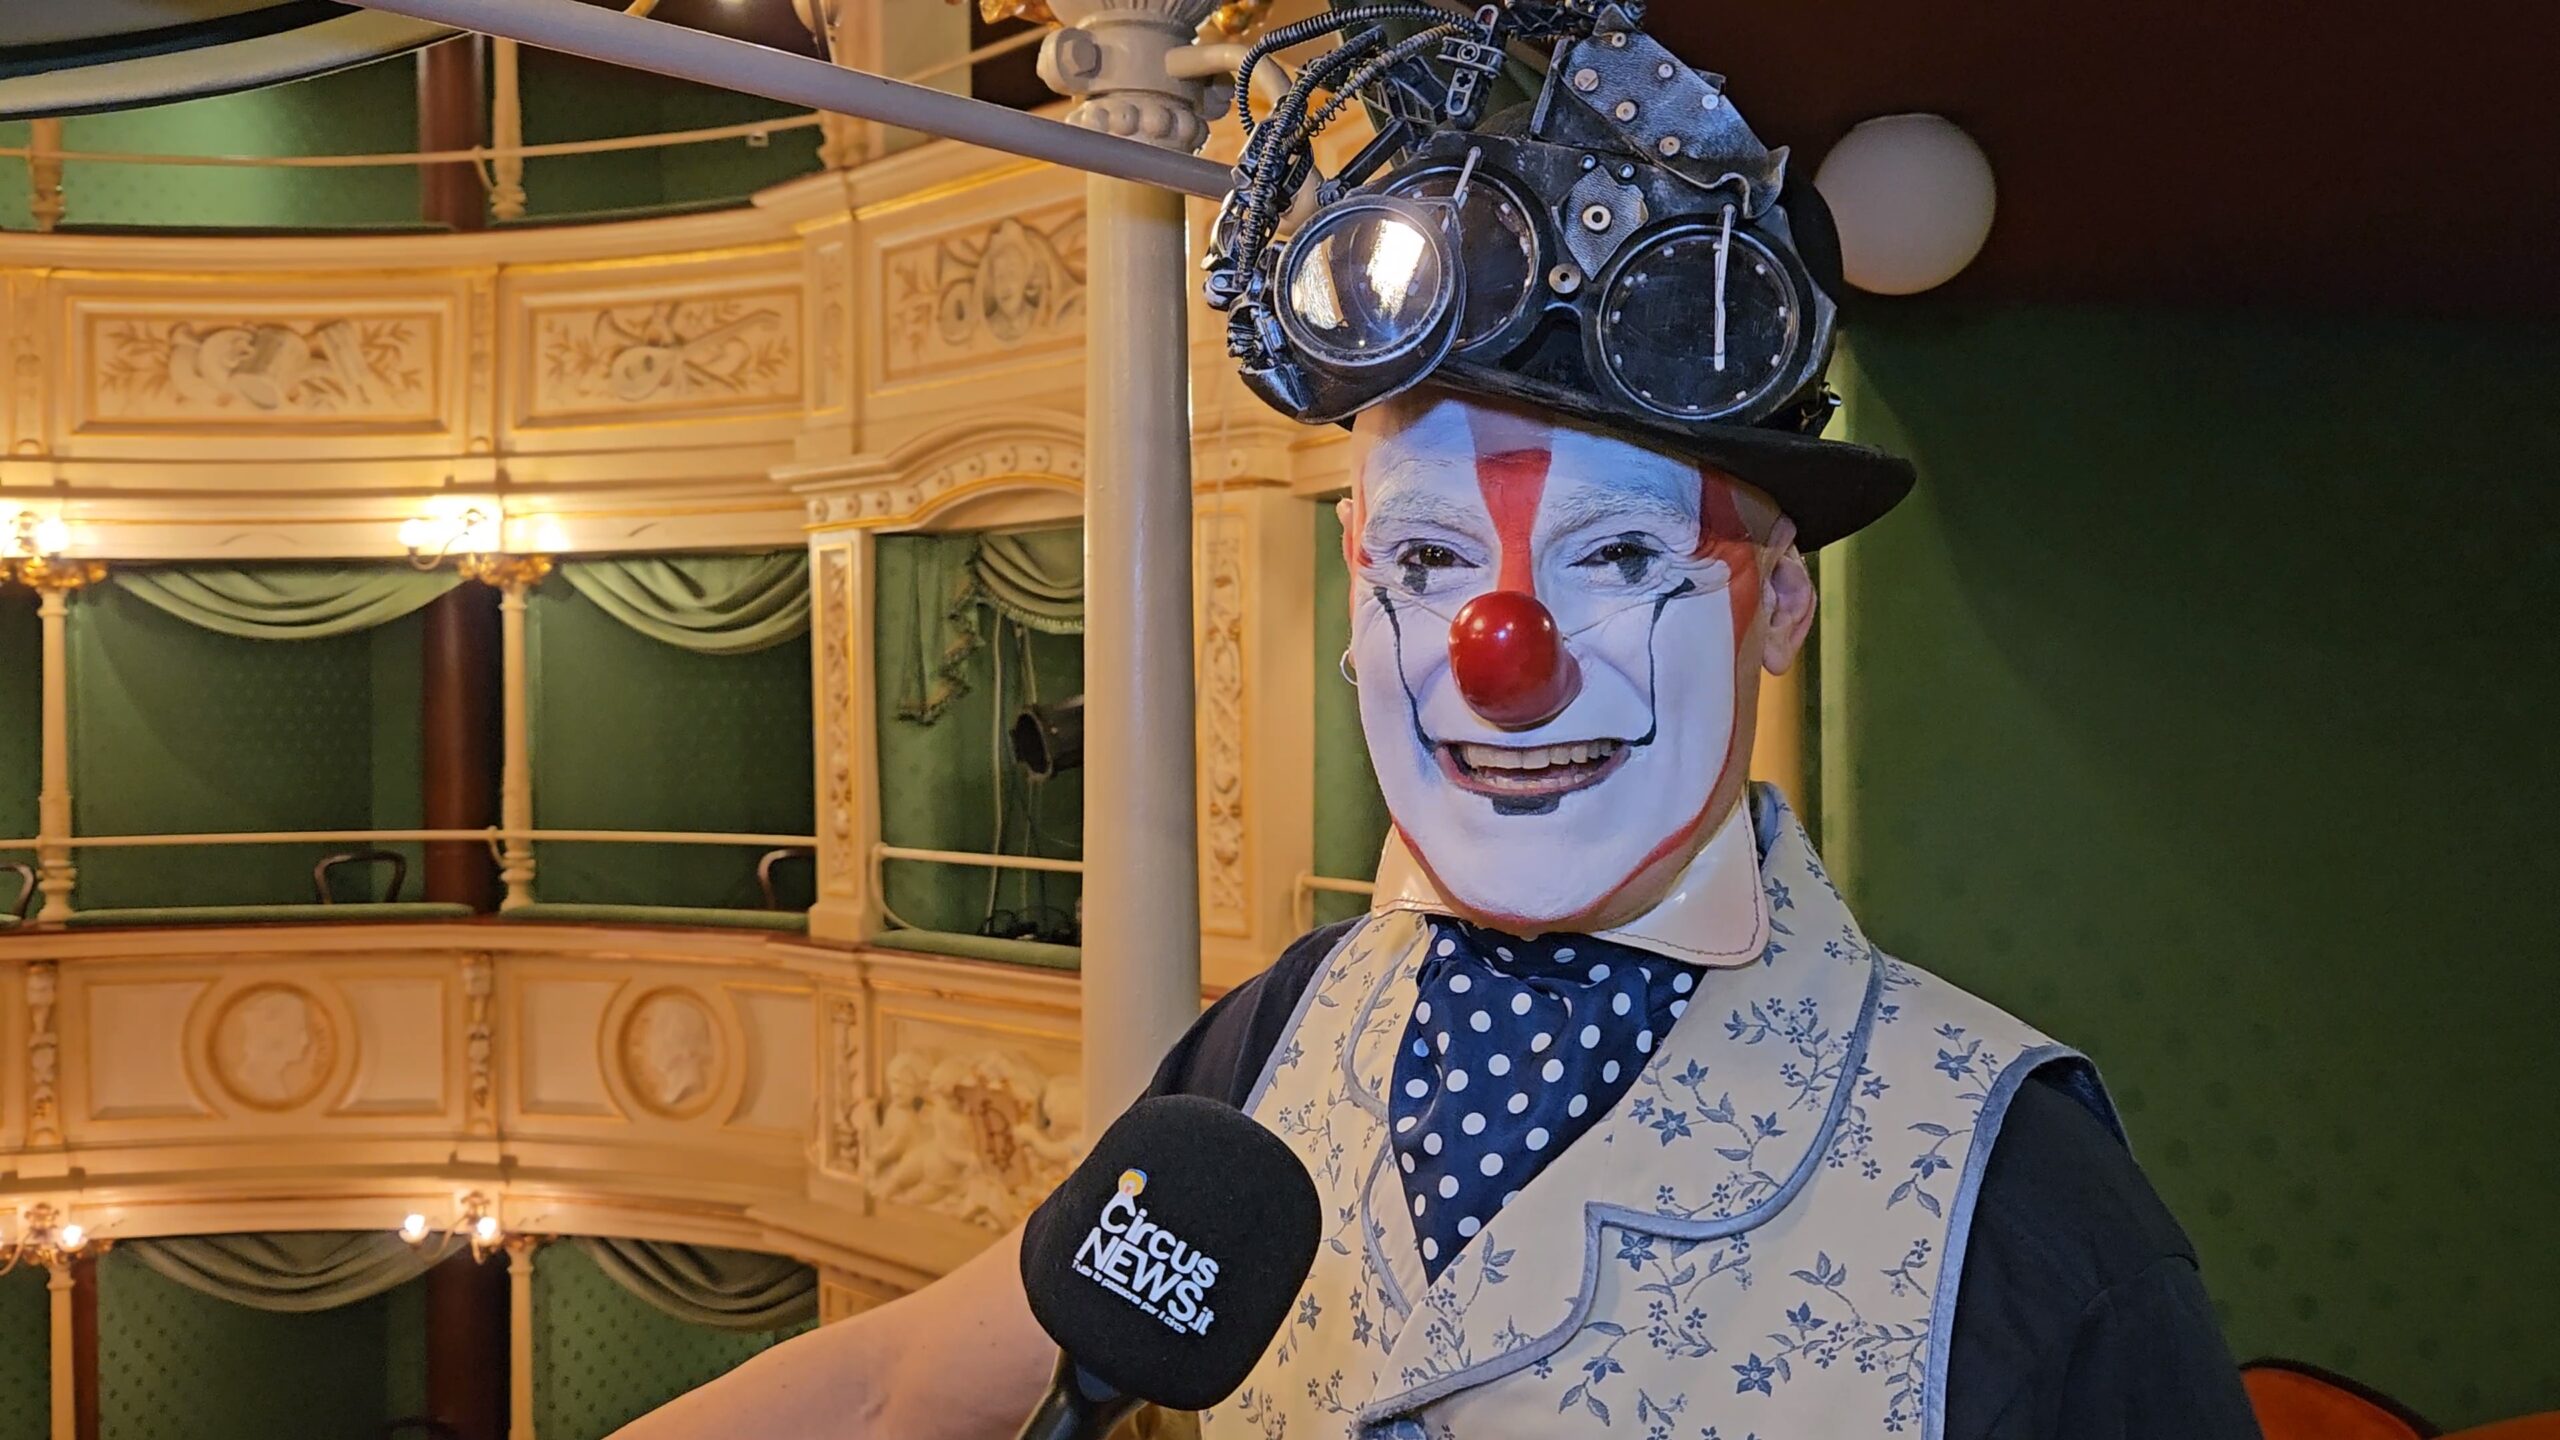 Intervista a “Carillon”, il Clown dei sogni